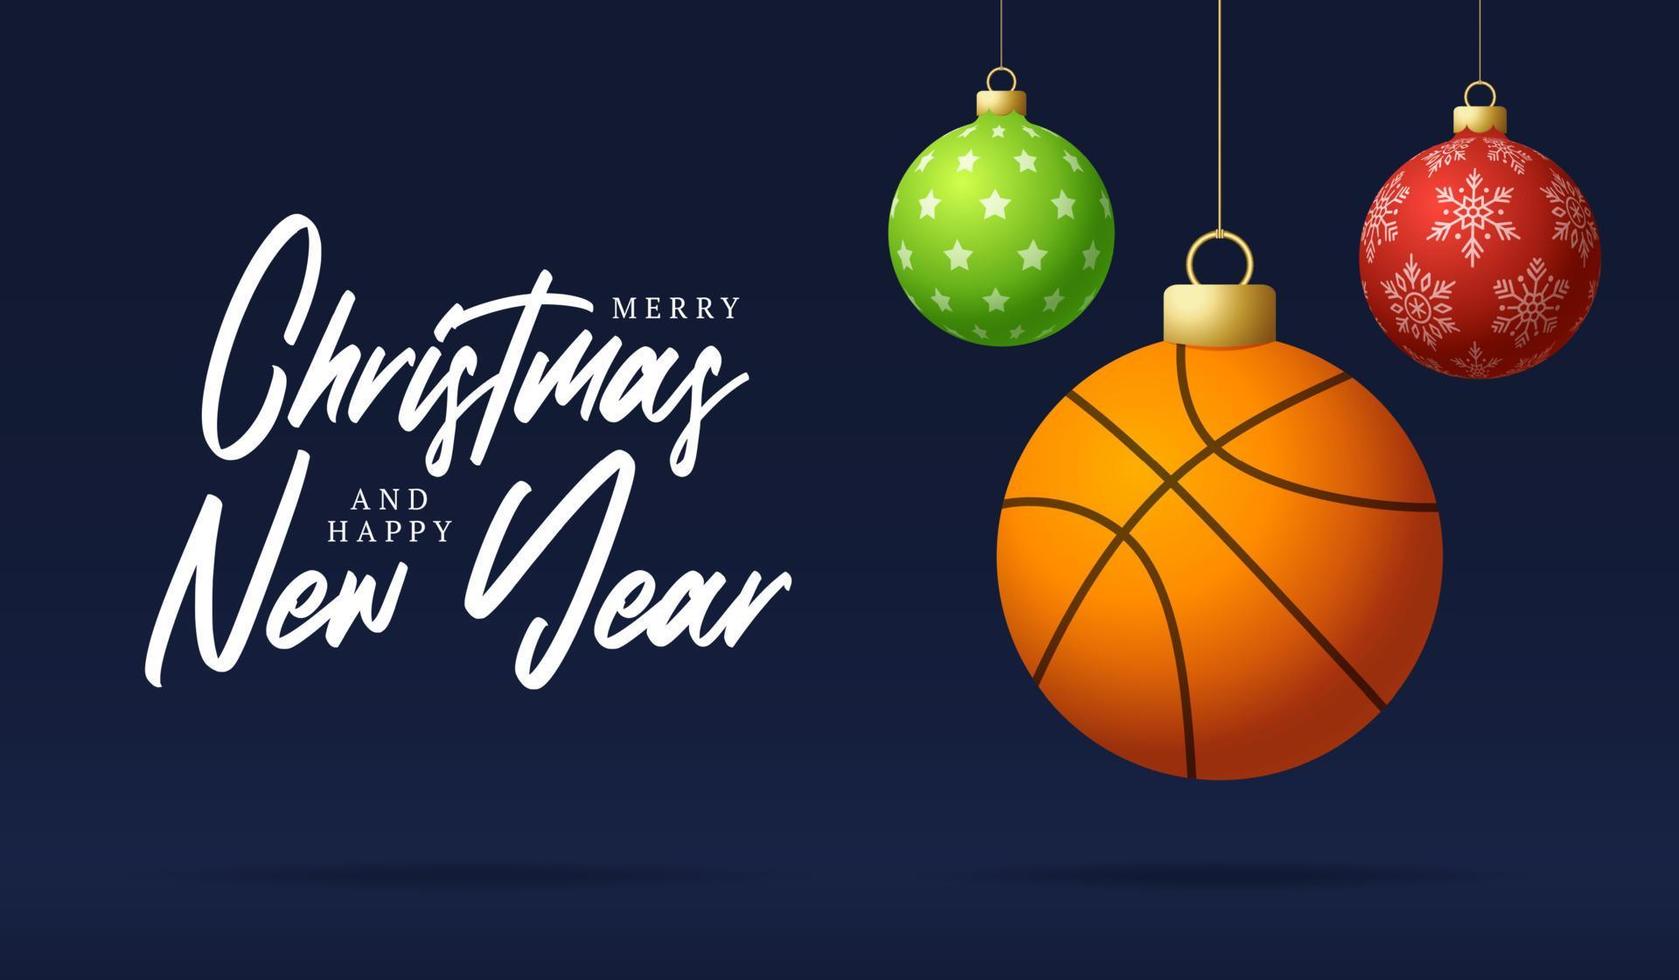 baloncesto feliz navidad y próspero año nuevo tarjeta de felicitación deportiva de lujo. pelota de baloncesto como una bola de navidad en el fondo. ilustración vectorial. vector